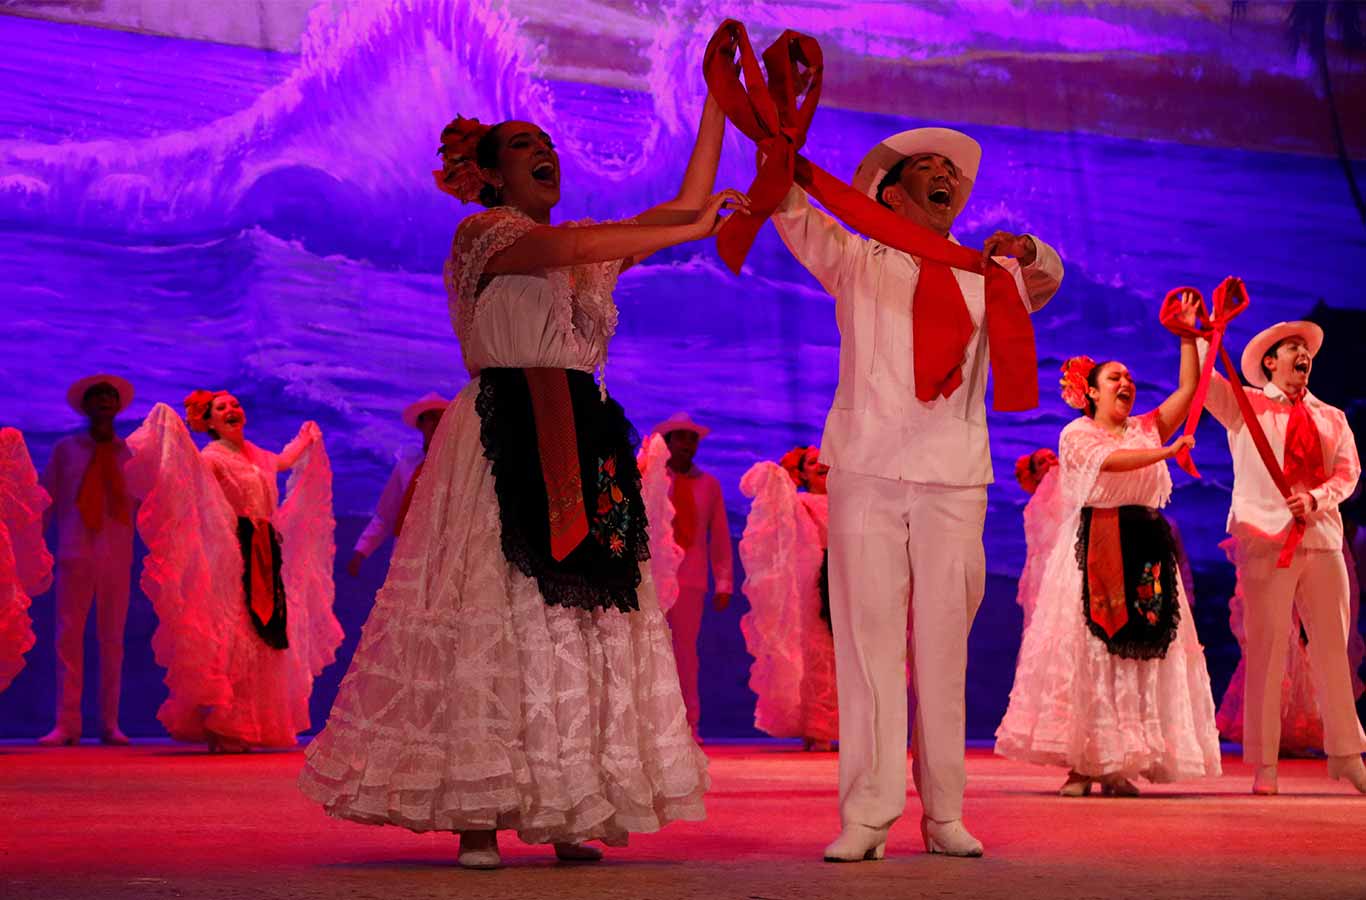 La Gala Folklórica se presenta en el Auditorio Luis Elizondo